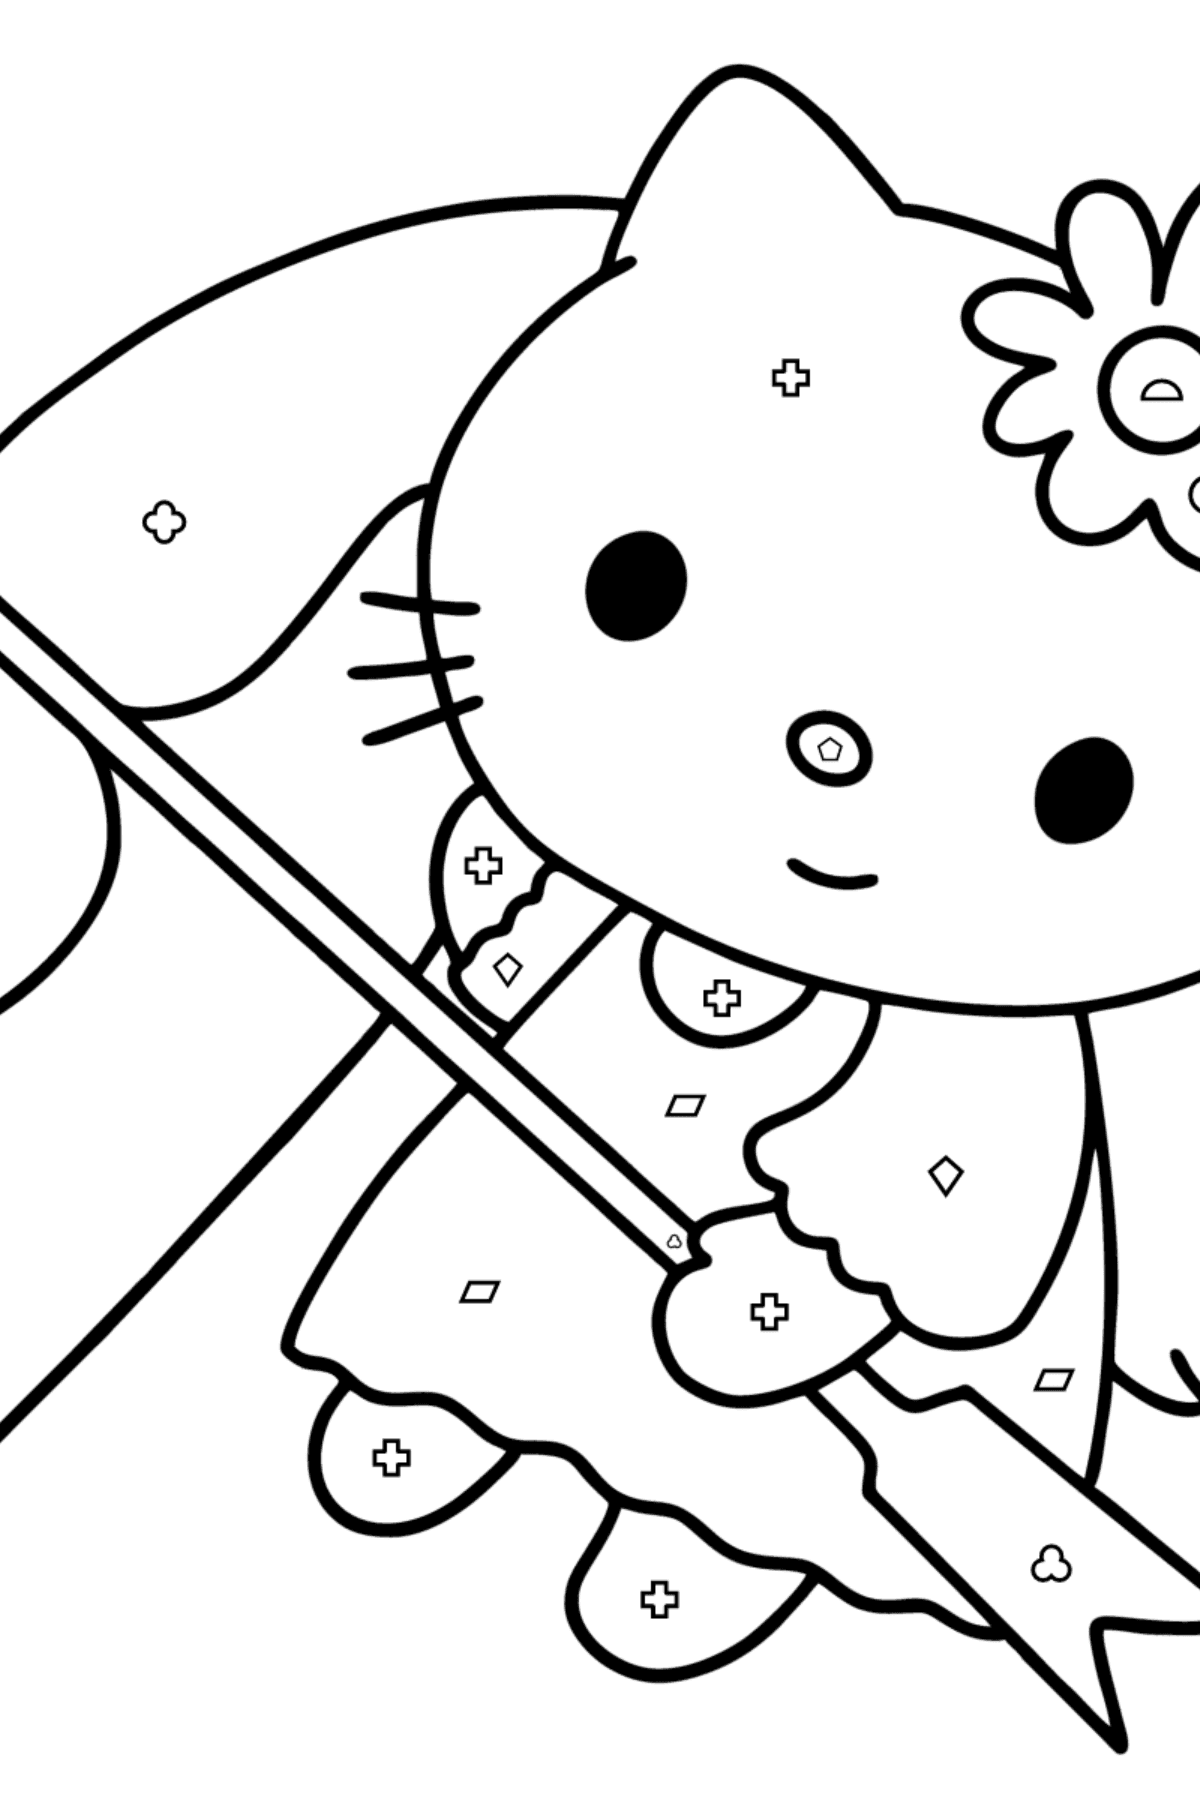 Boyama sayfası Hello Kitty Sevgililer Günü - Geometrik Şekillerle Boyama çocuklar için